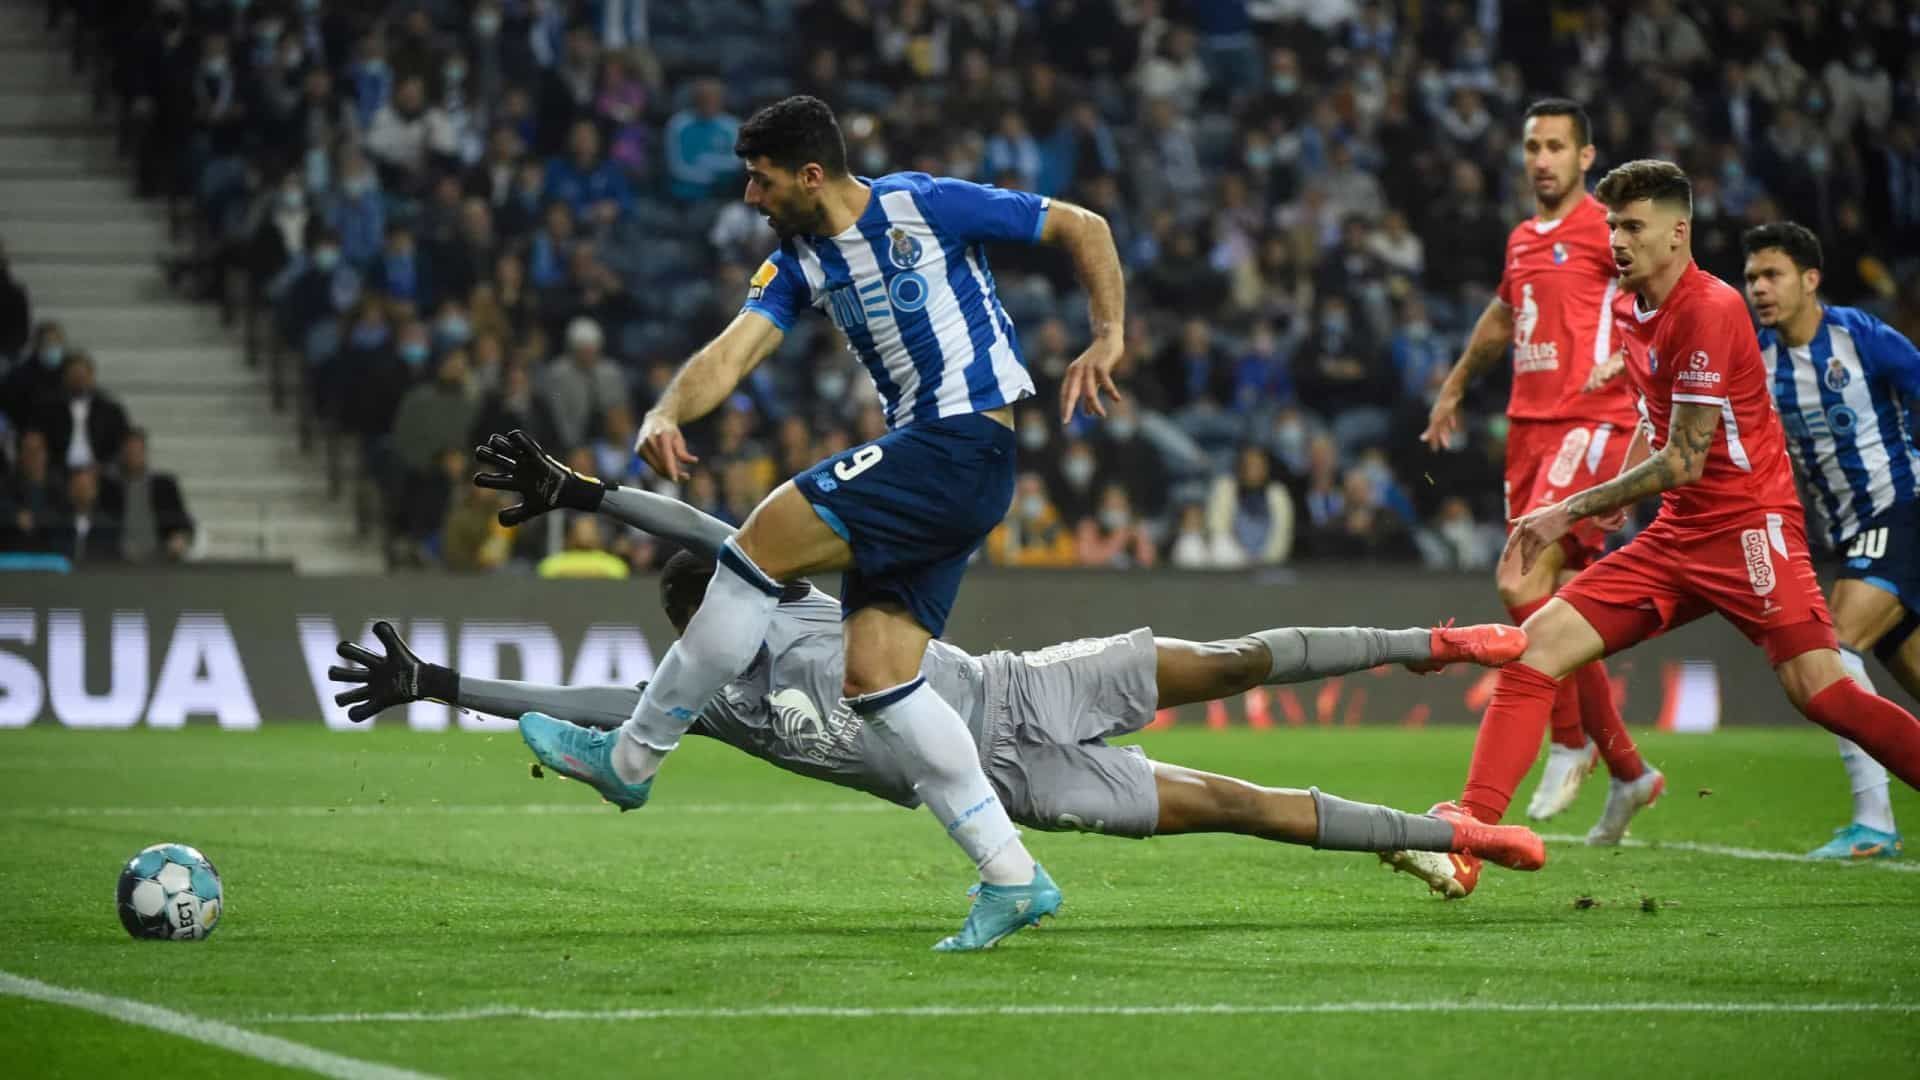 Gil Vicente and Porto meet in the Portuguese Primeira Liga on Saturday